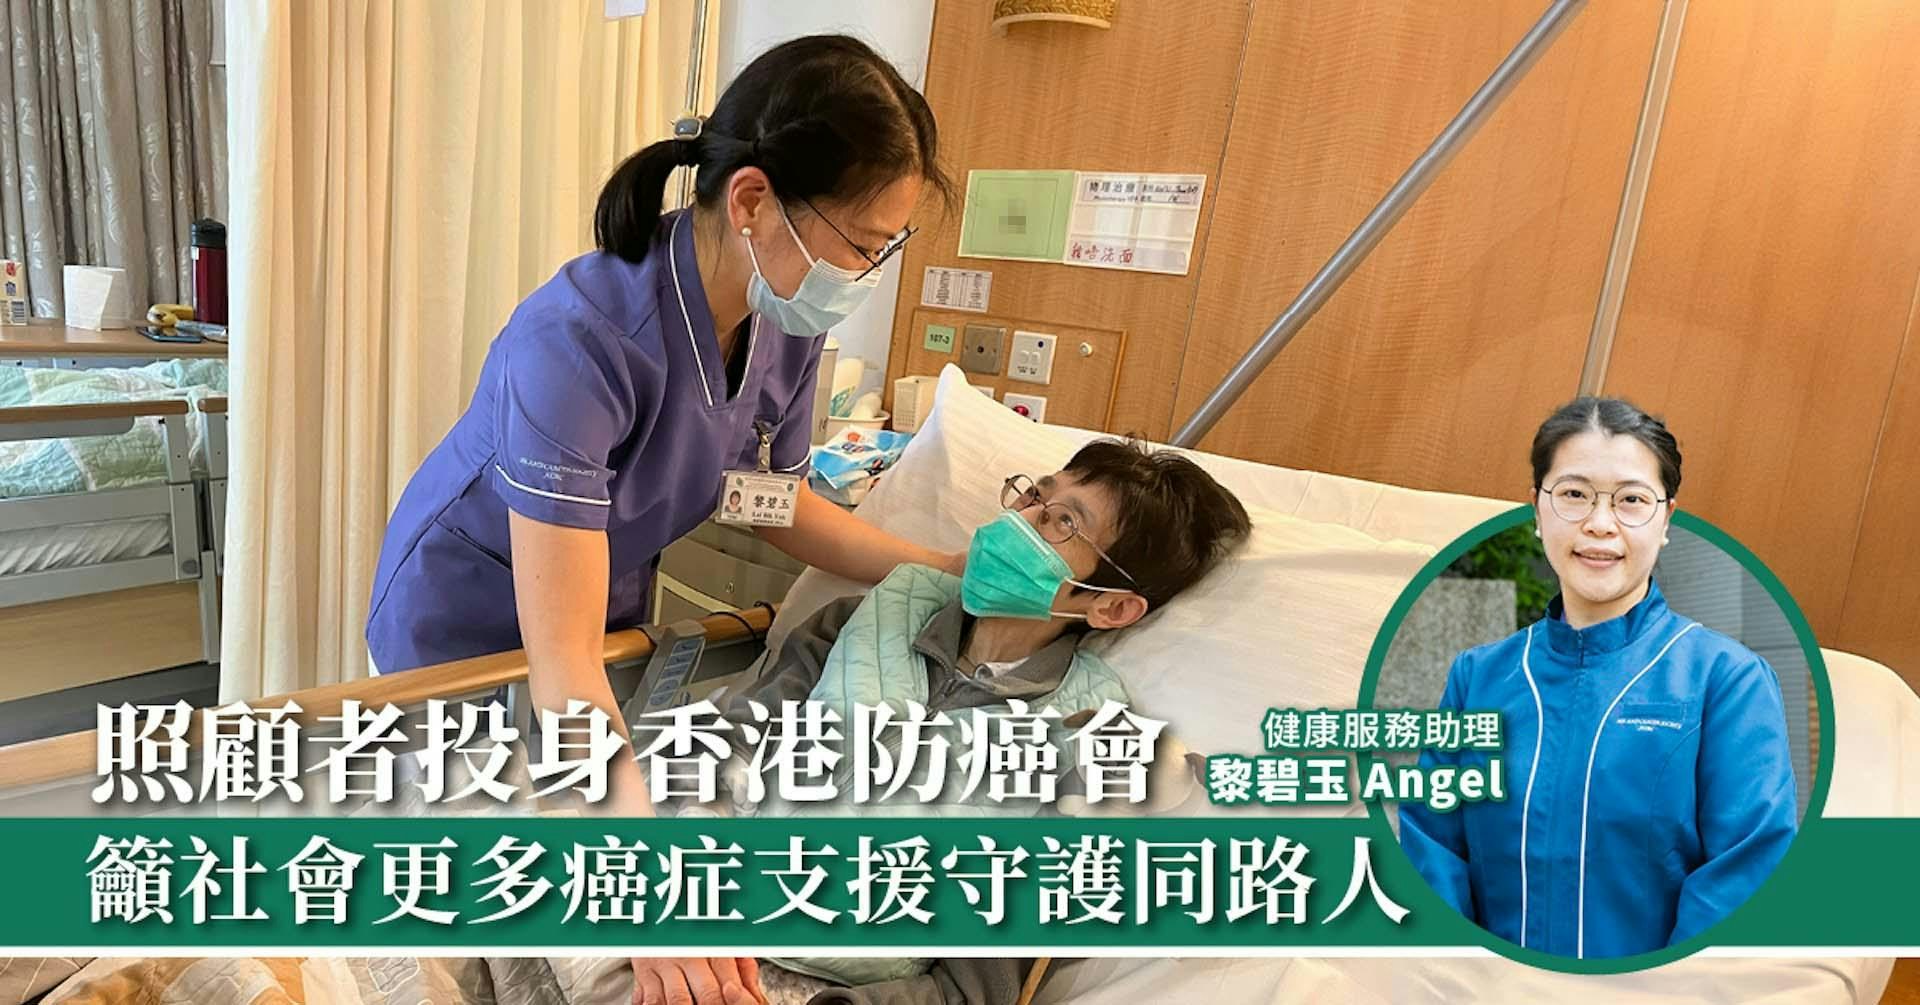 照顧者投身香港防癌會 籲社會更多癌症支援守護同路人